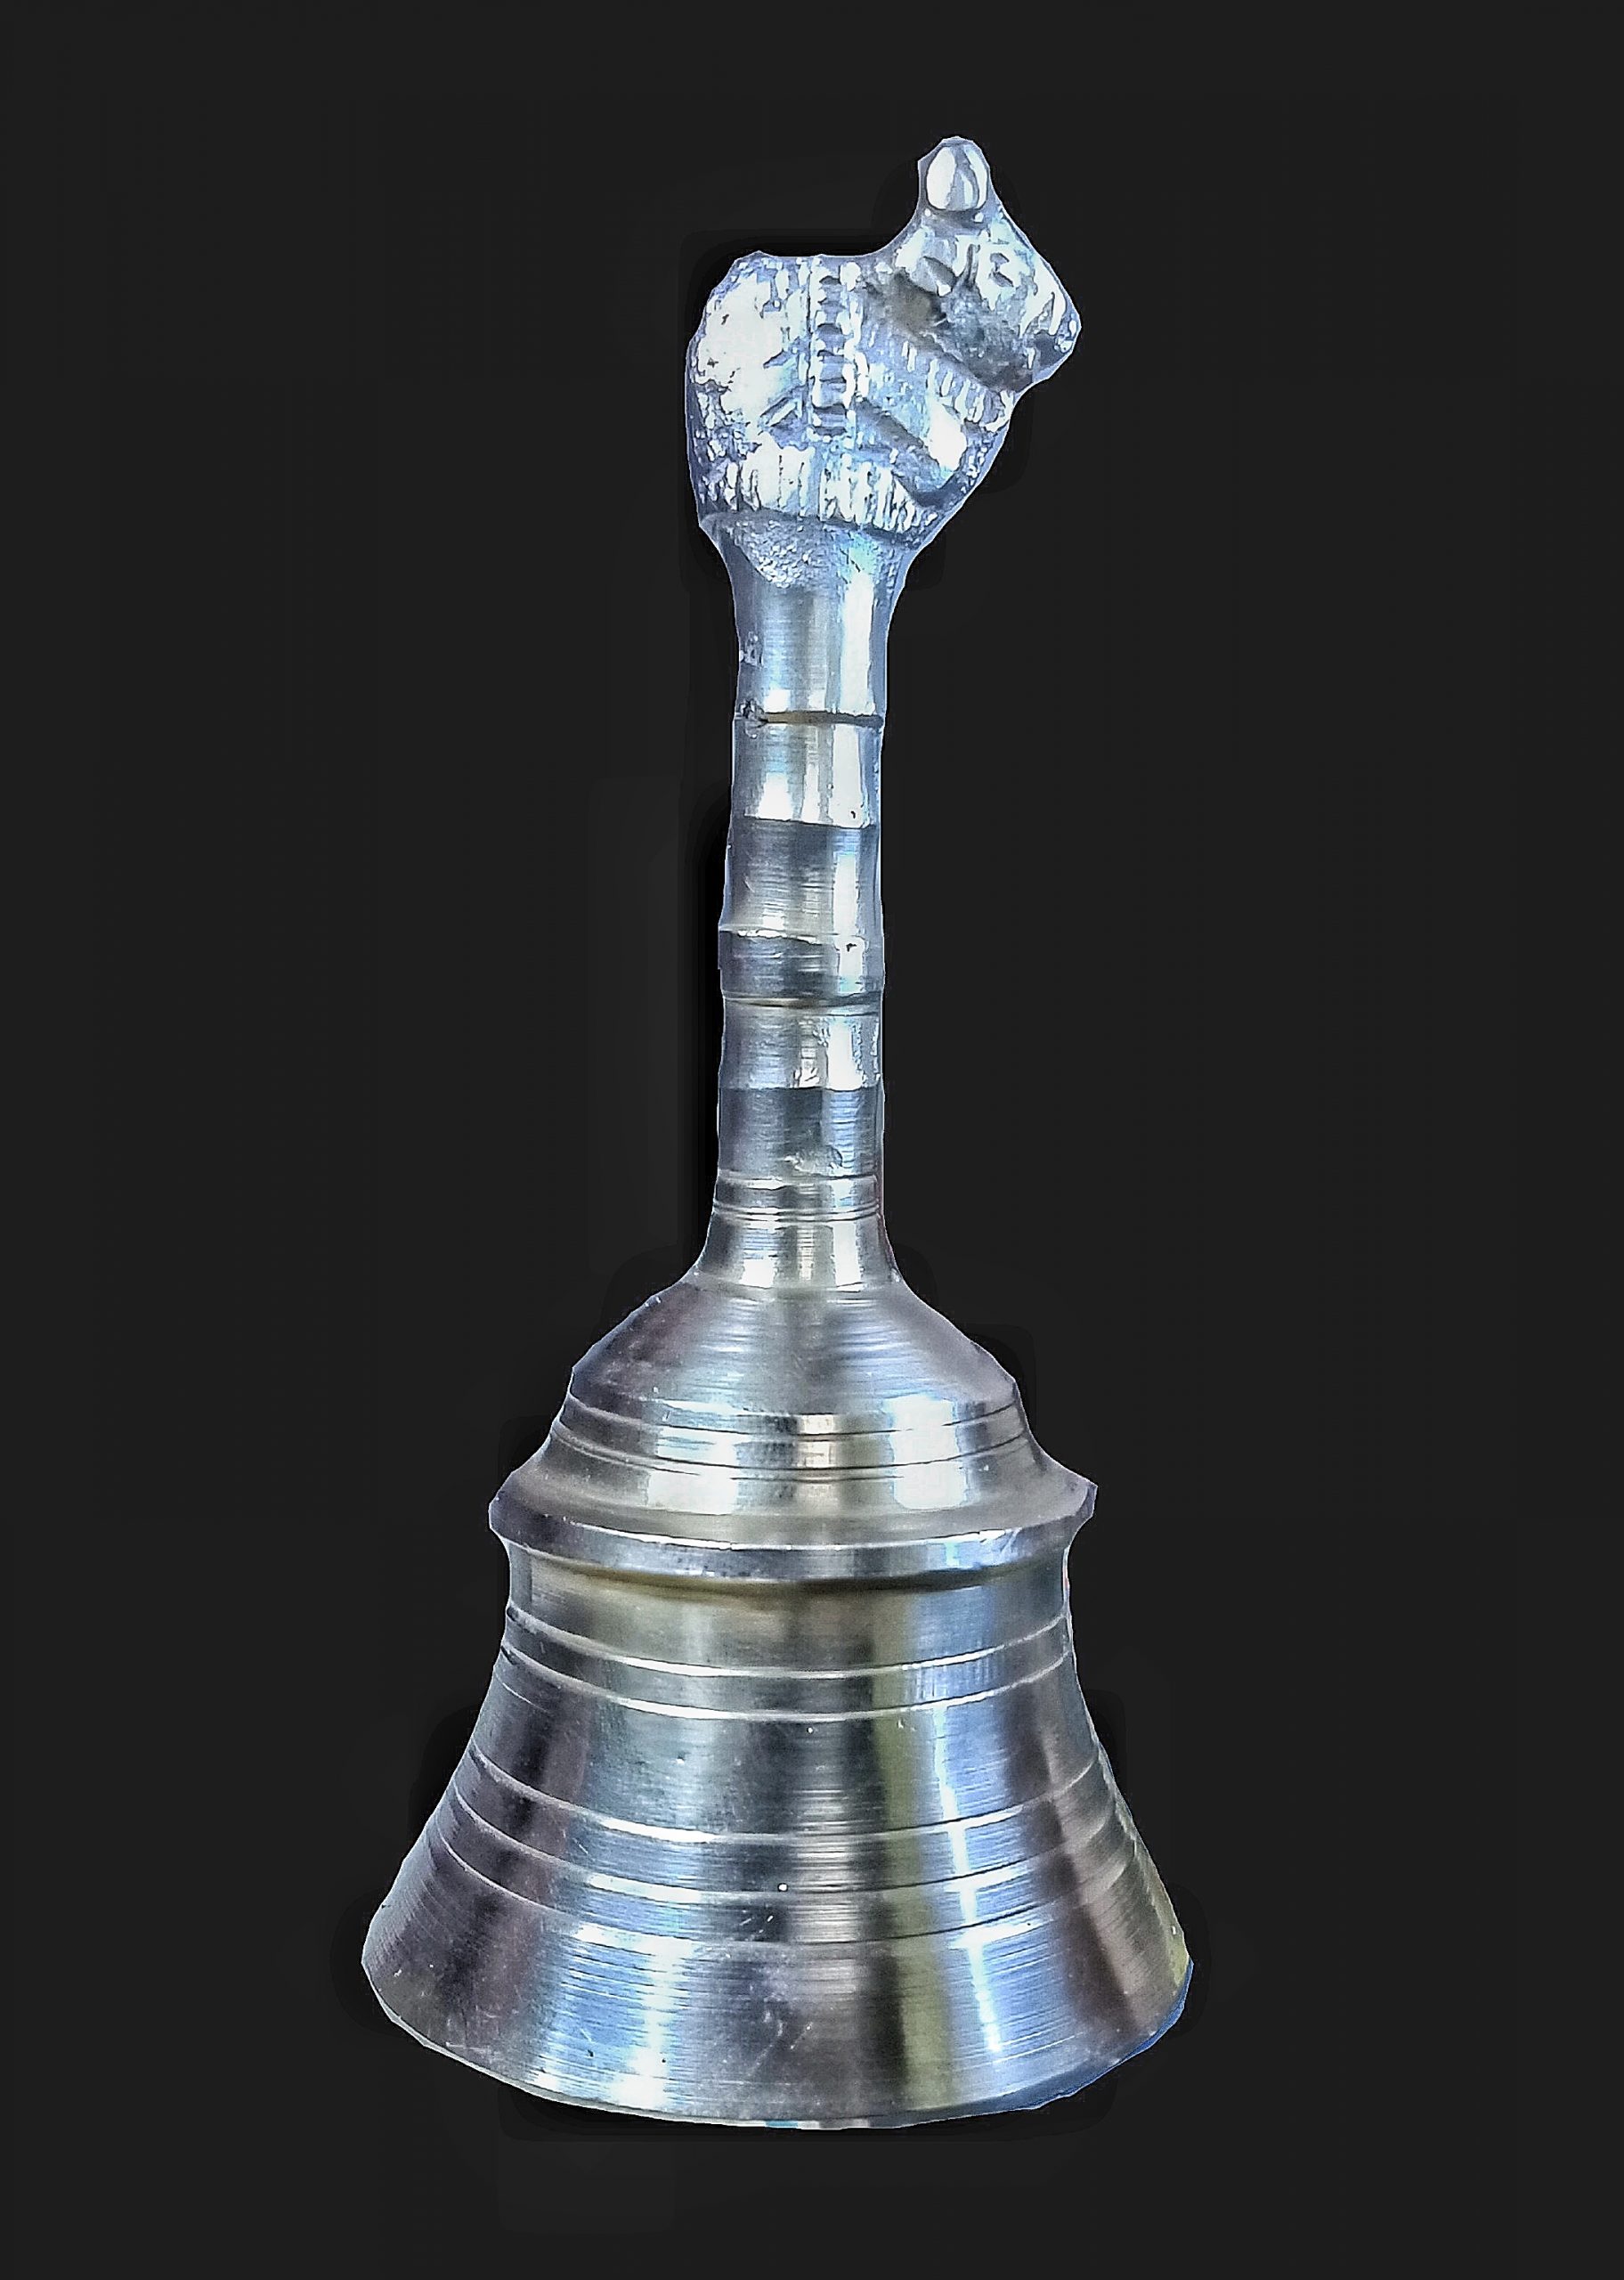 A worship bell